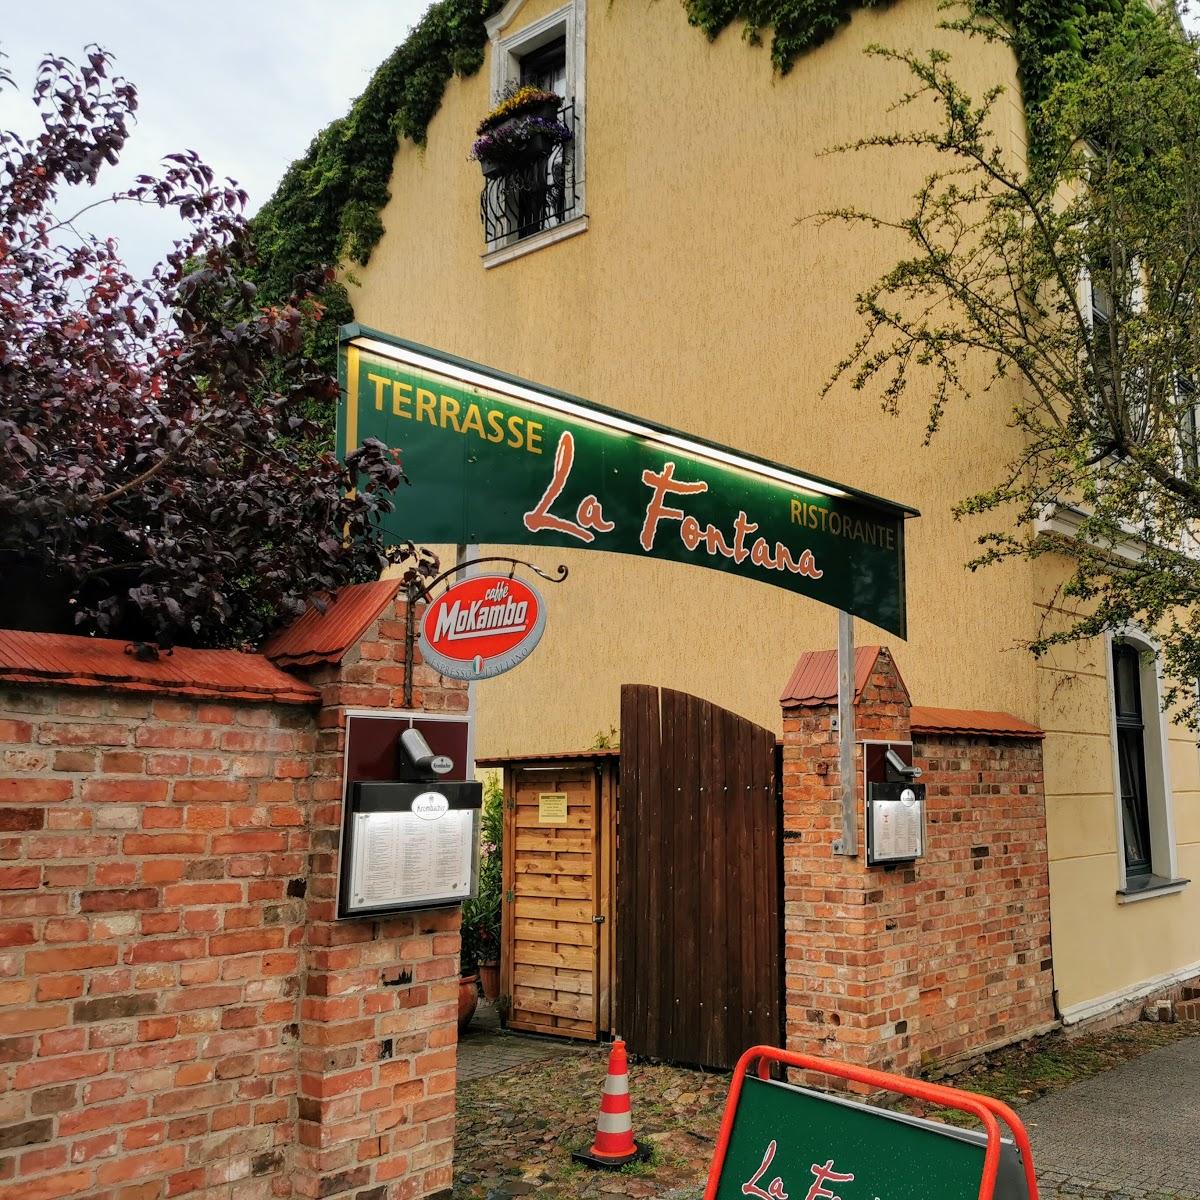 Restaurant "La Fontana Pizzeria" in Bad Freienwalde (Oder)